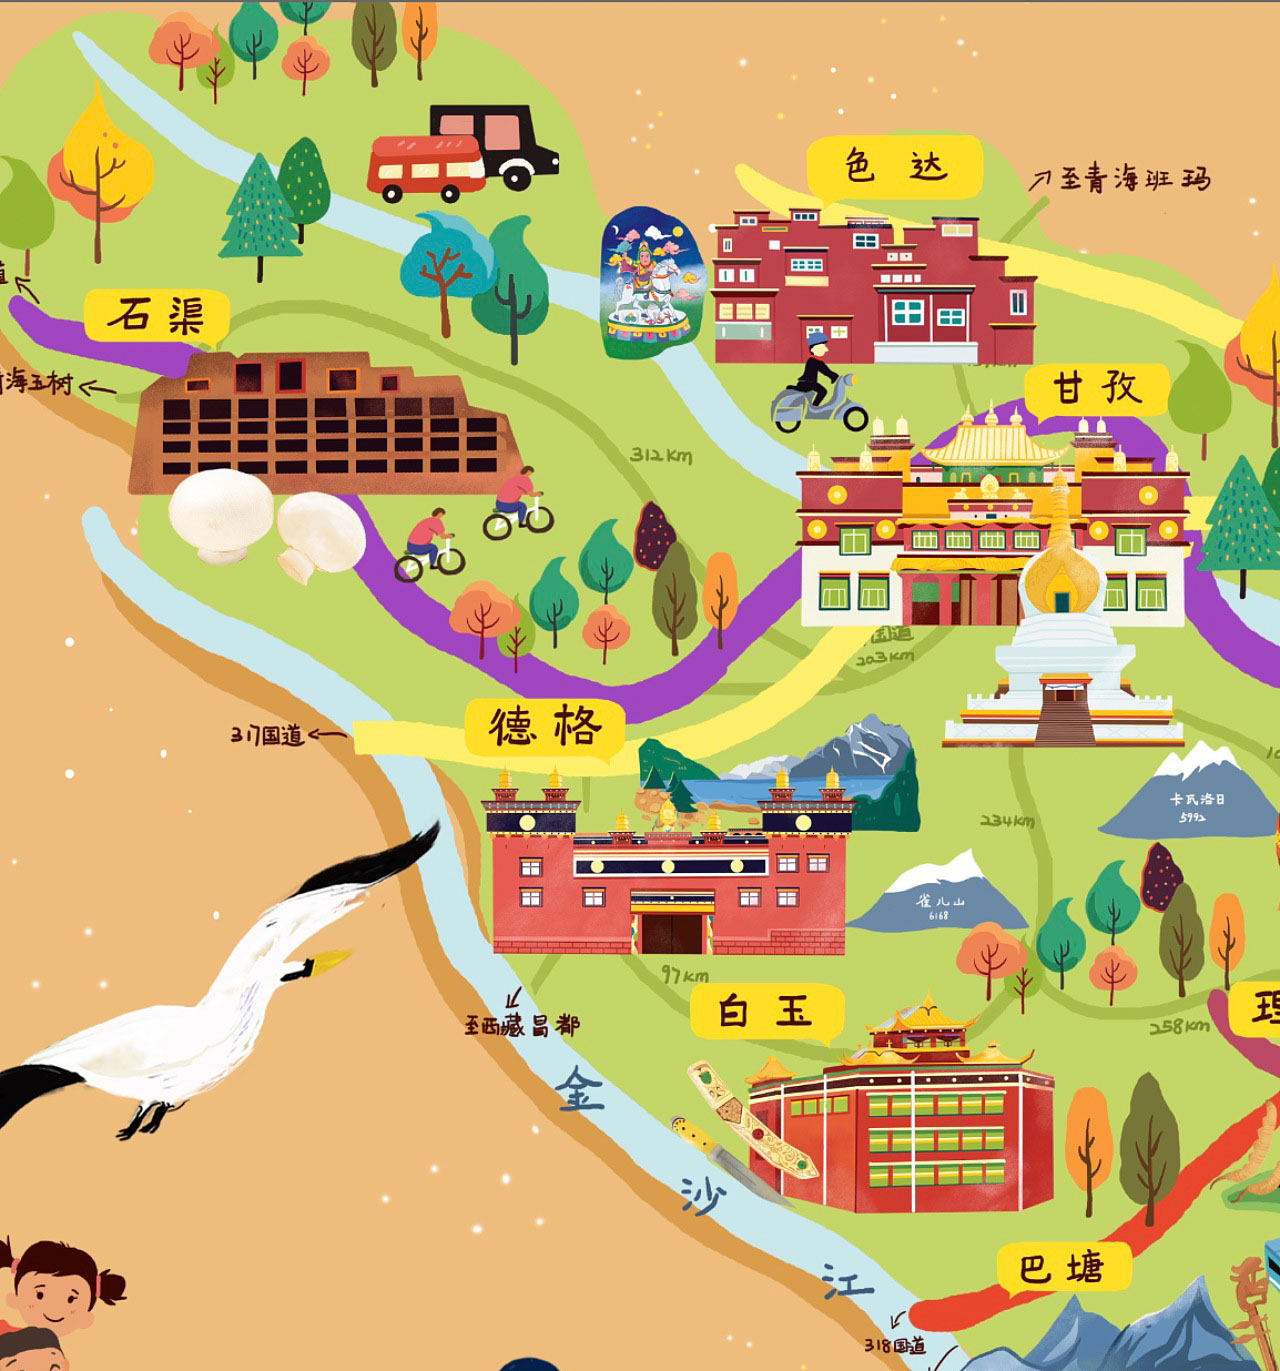 二道江手绘地图景区的文化宝库